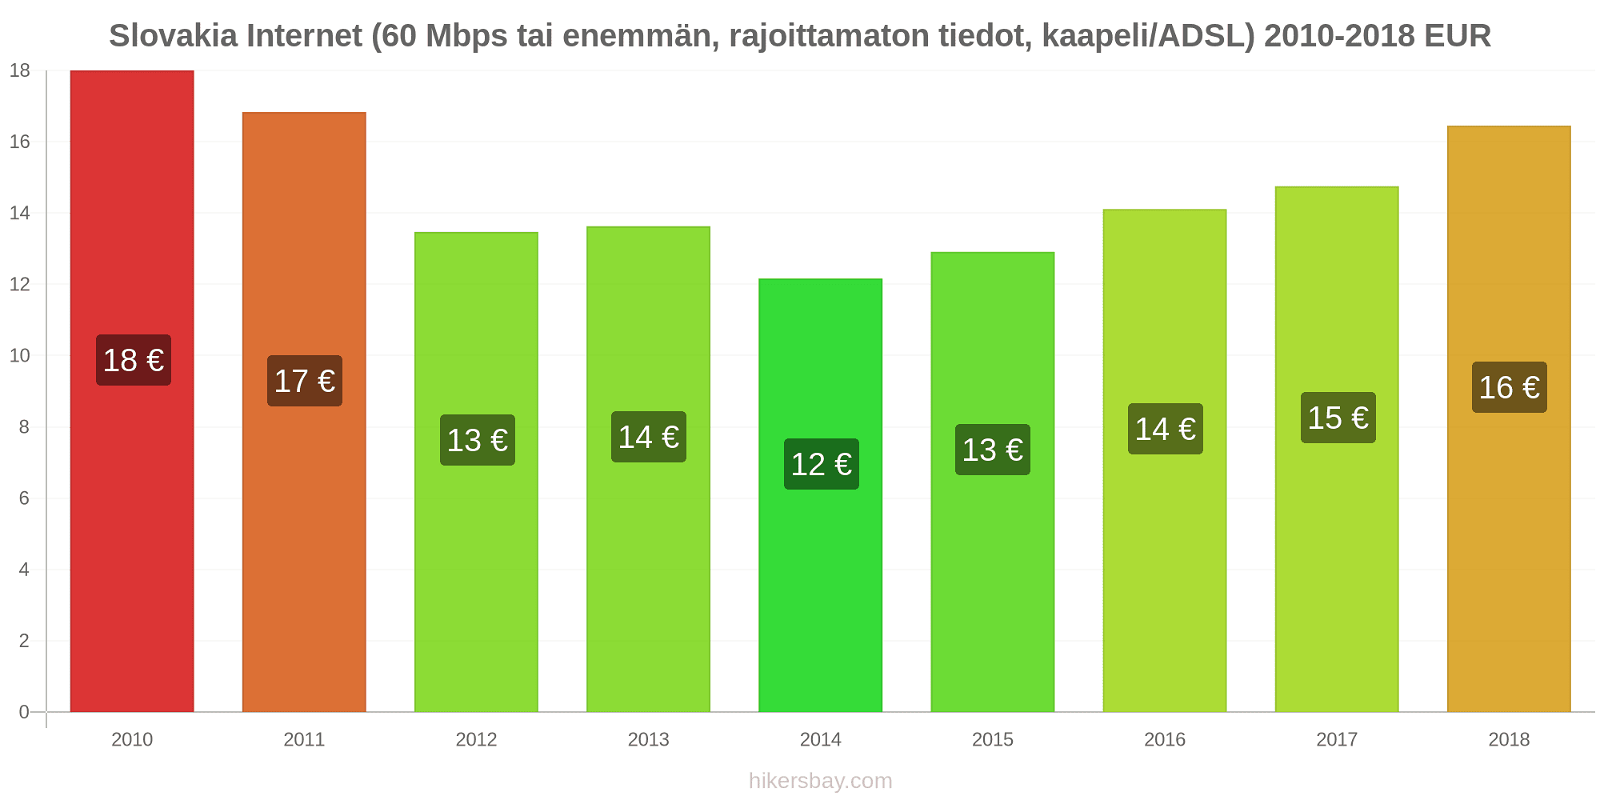 Slovakia hintojen muutokset Internet (60 Mbps tai enemmän, rajoittamaton tiedot, kaapeli/ADSL) hikersbay.com